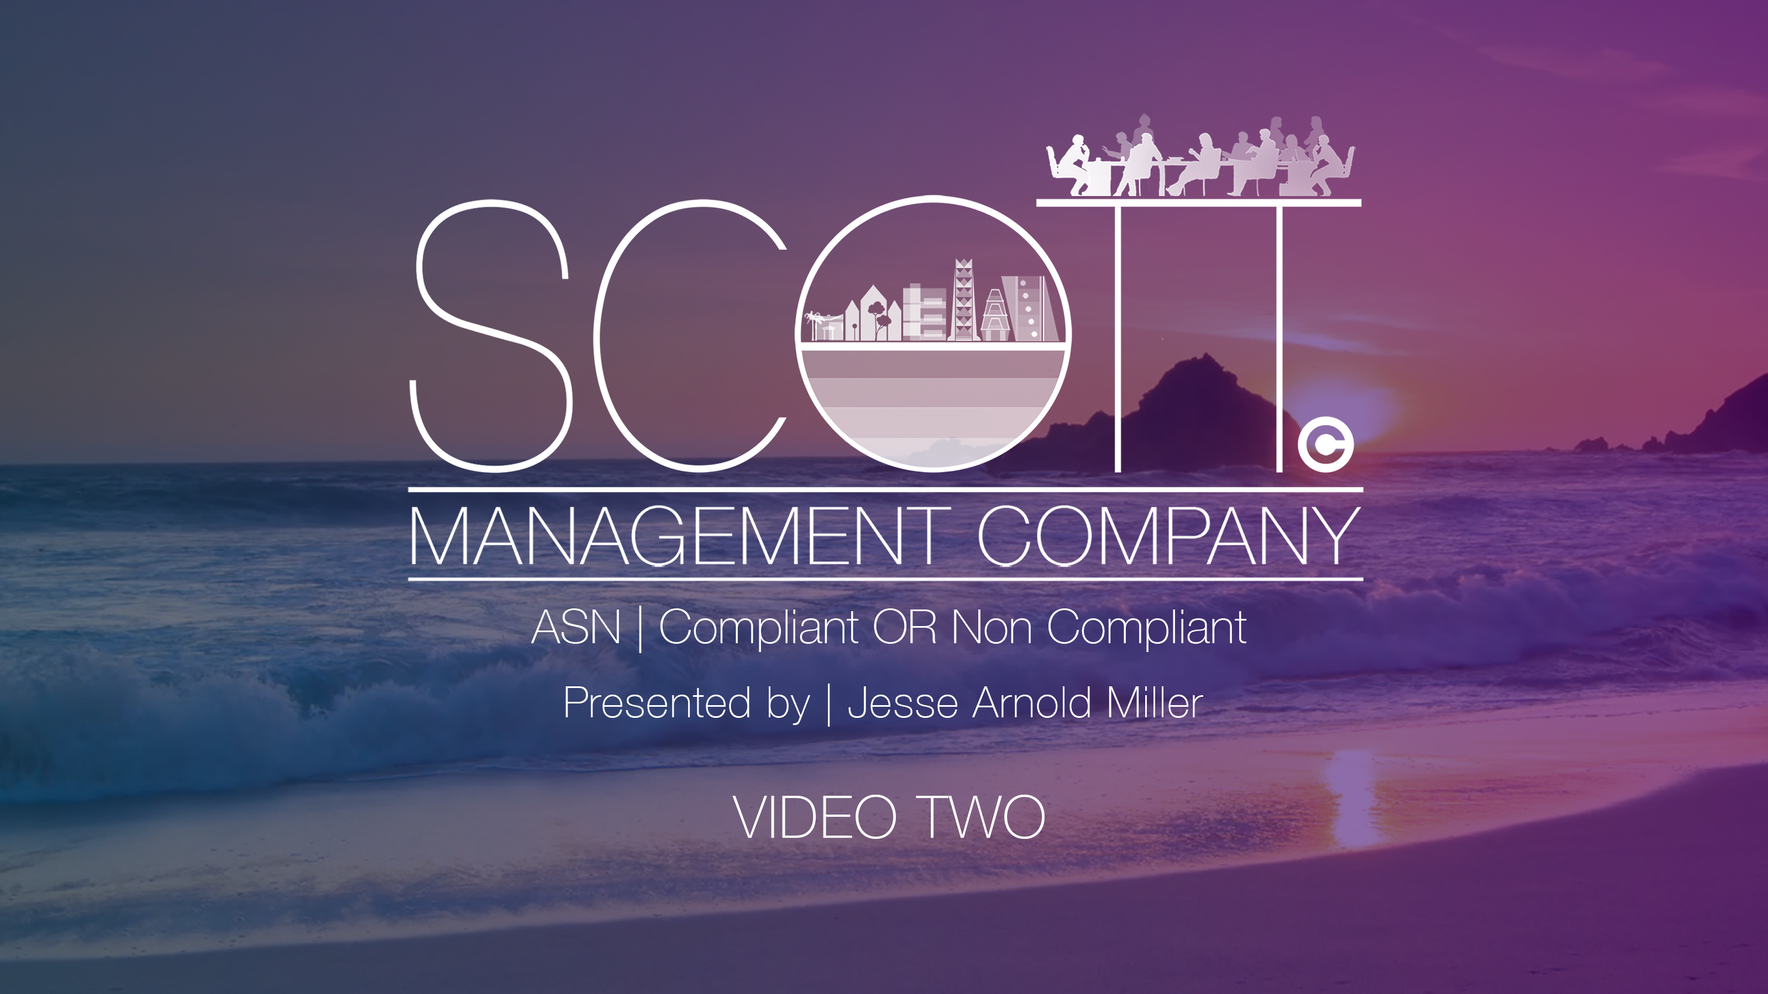 ASN | Compliant or Non Compliant